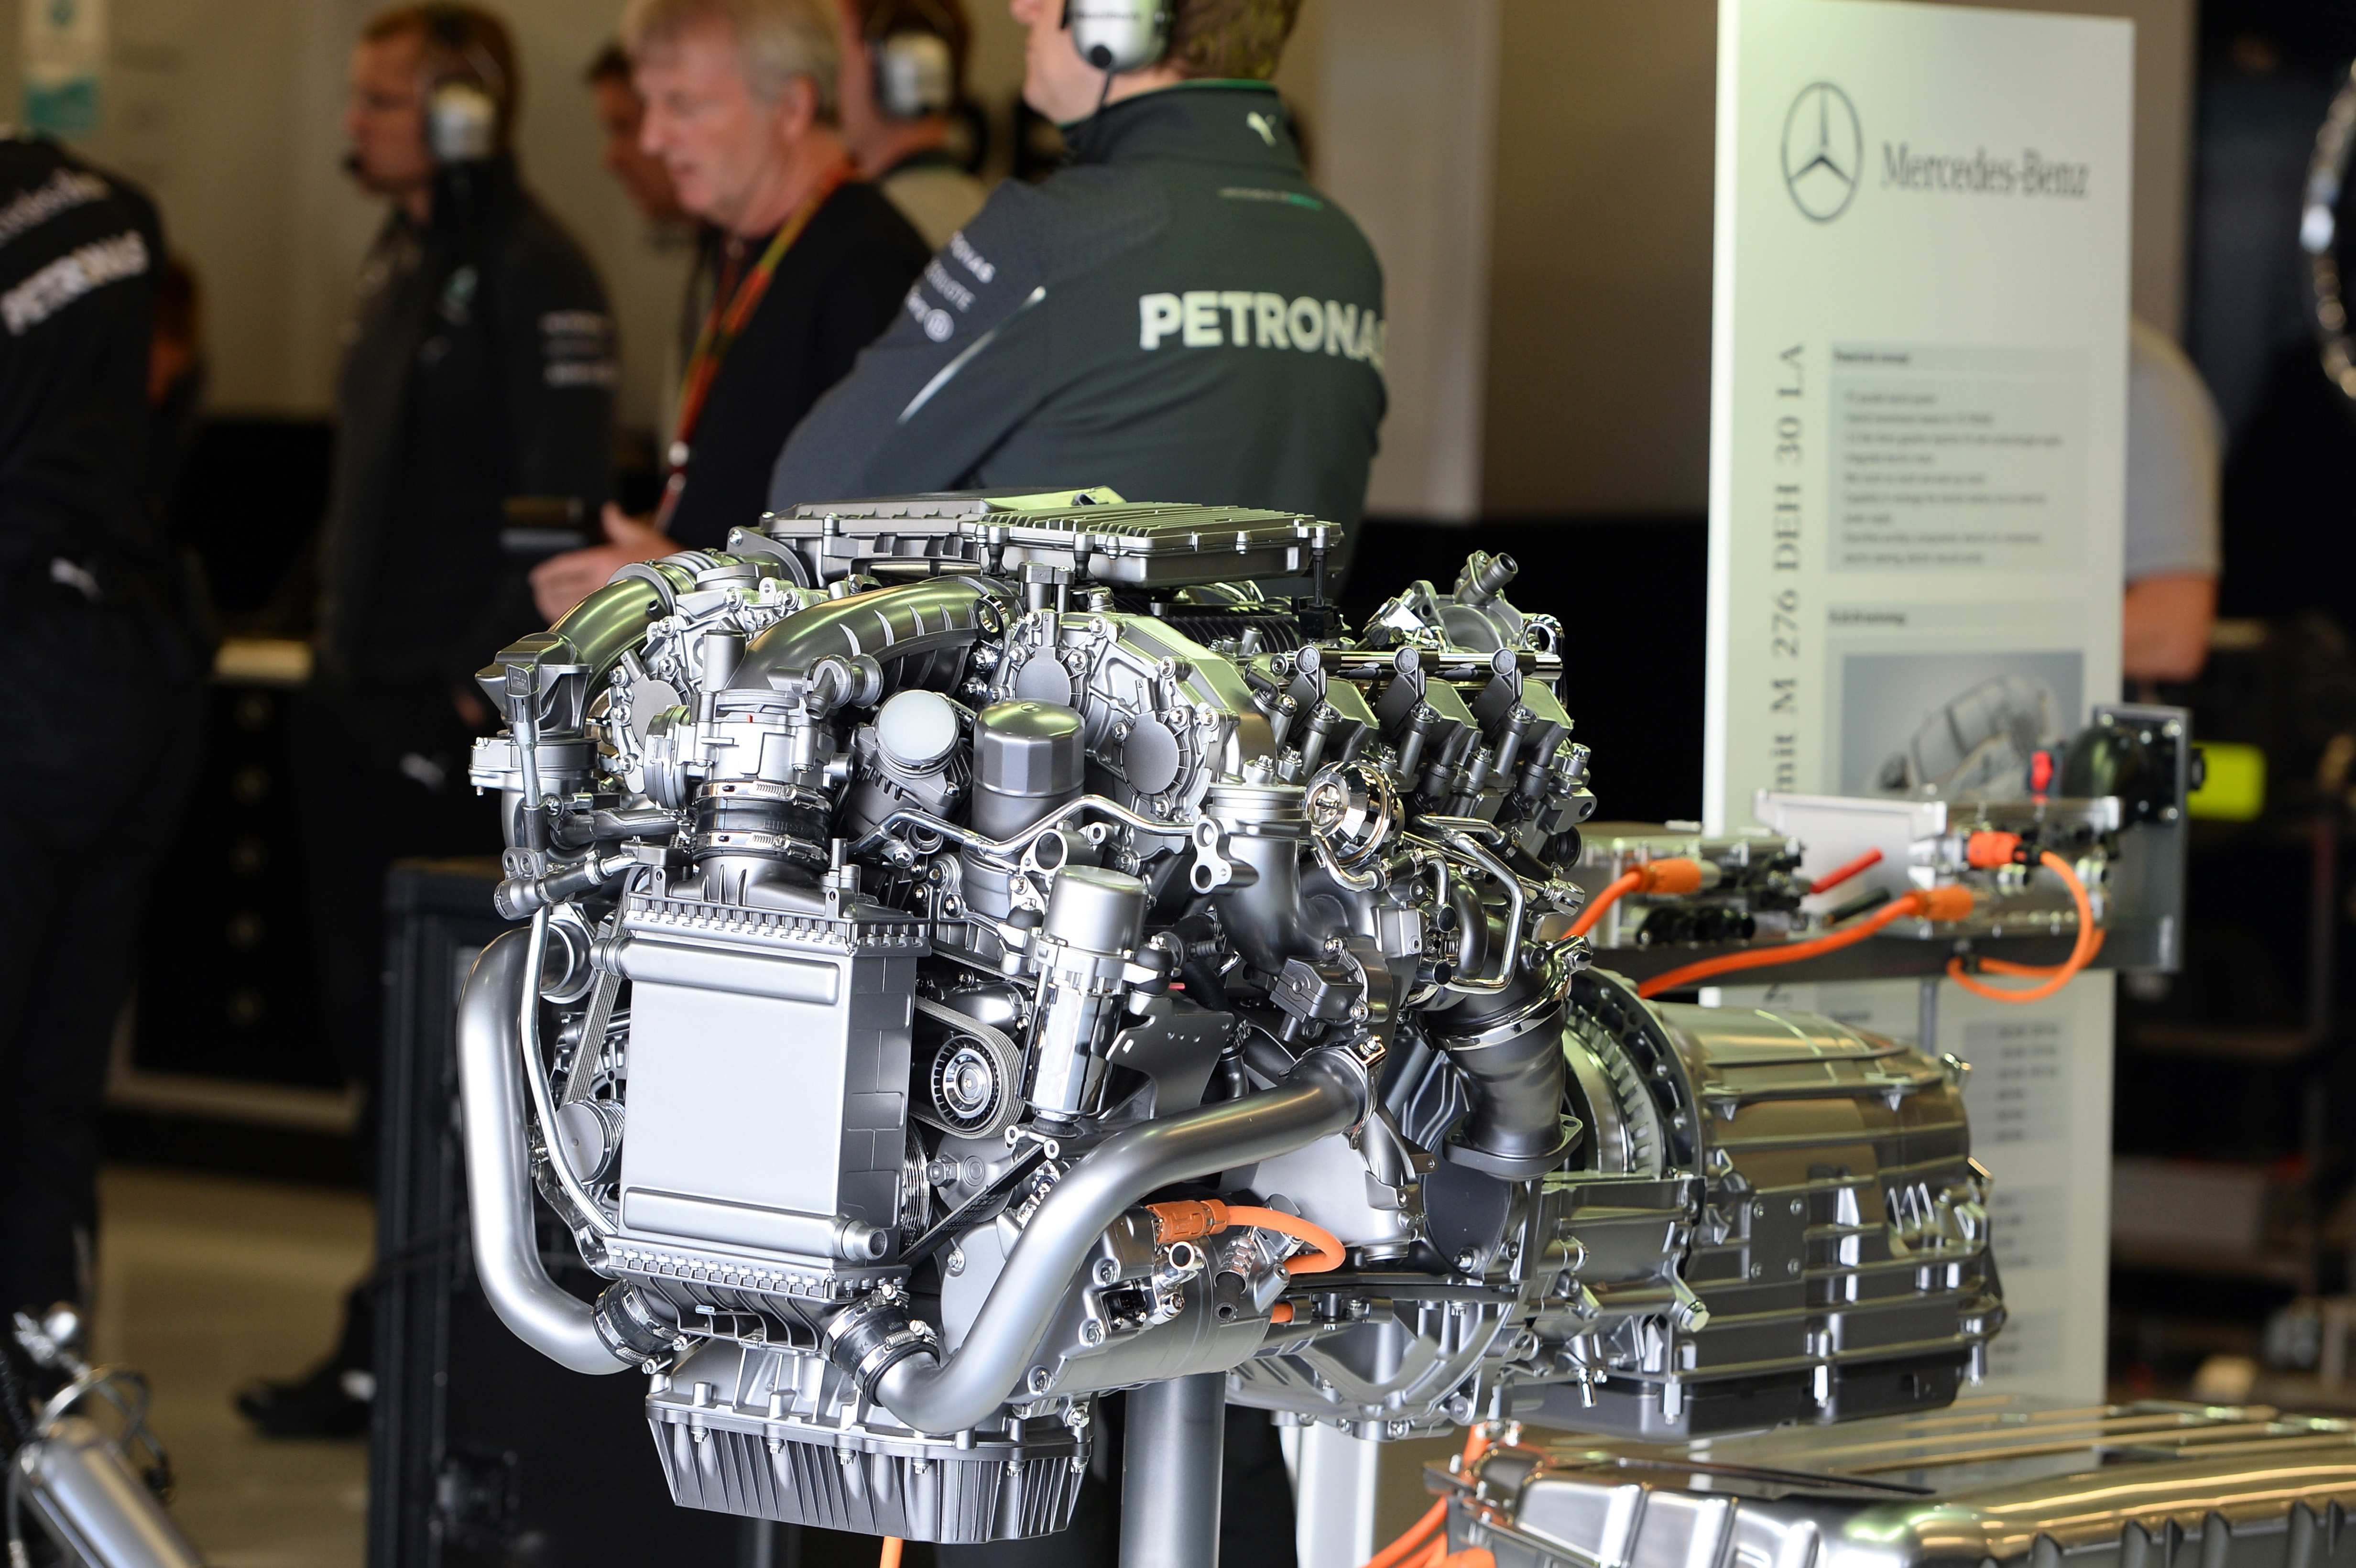 Grote motorupdate voor Mercedes in Monza